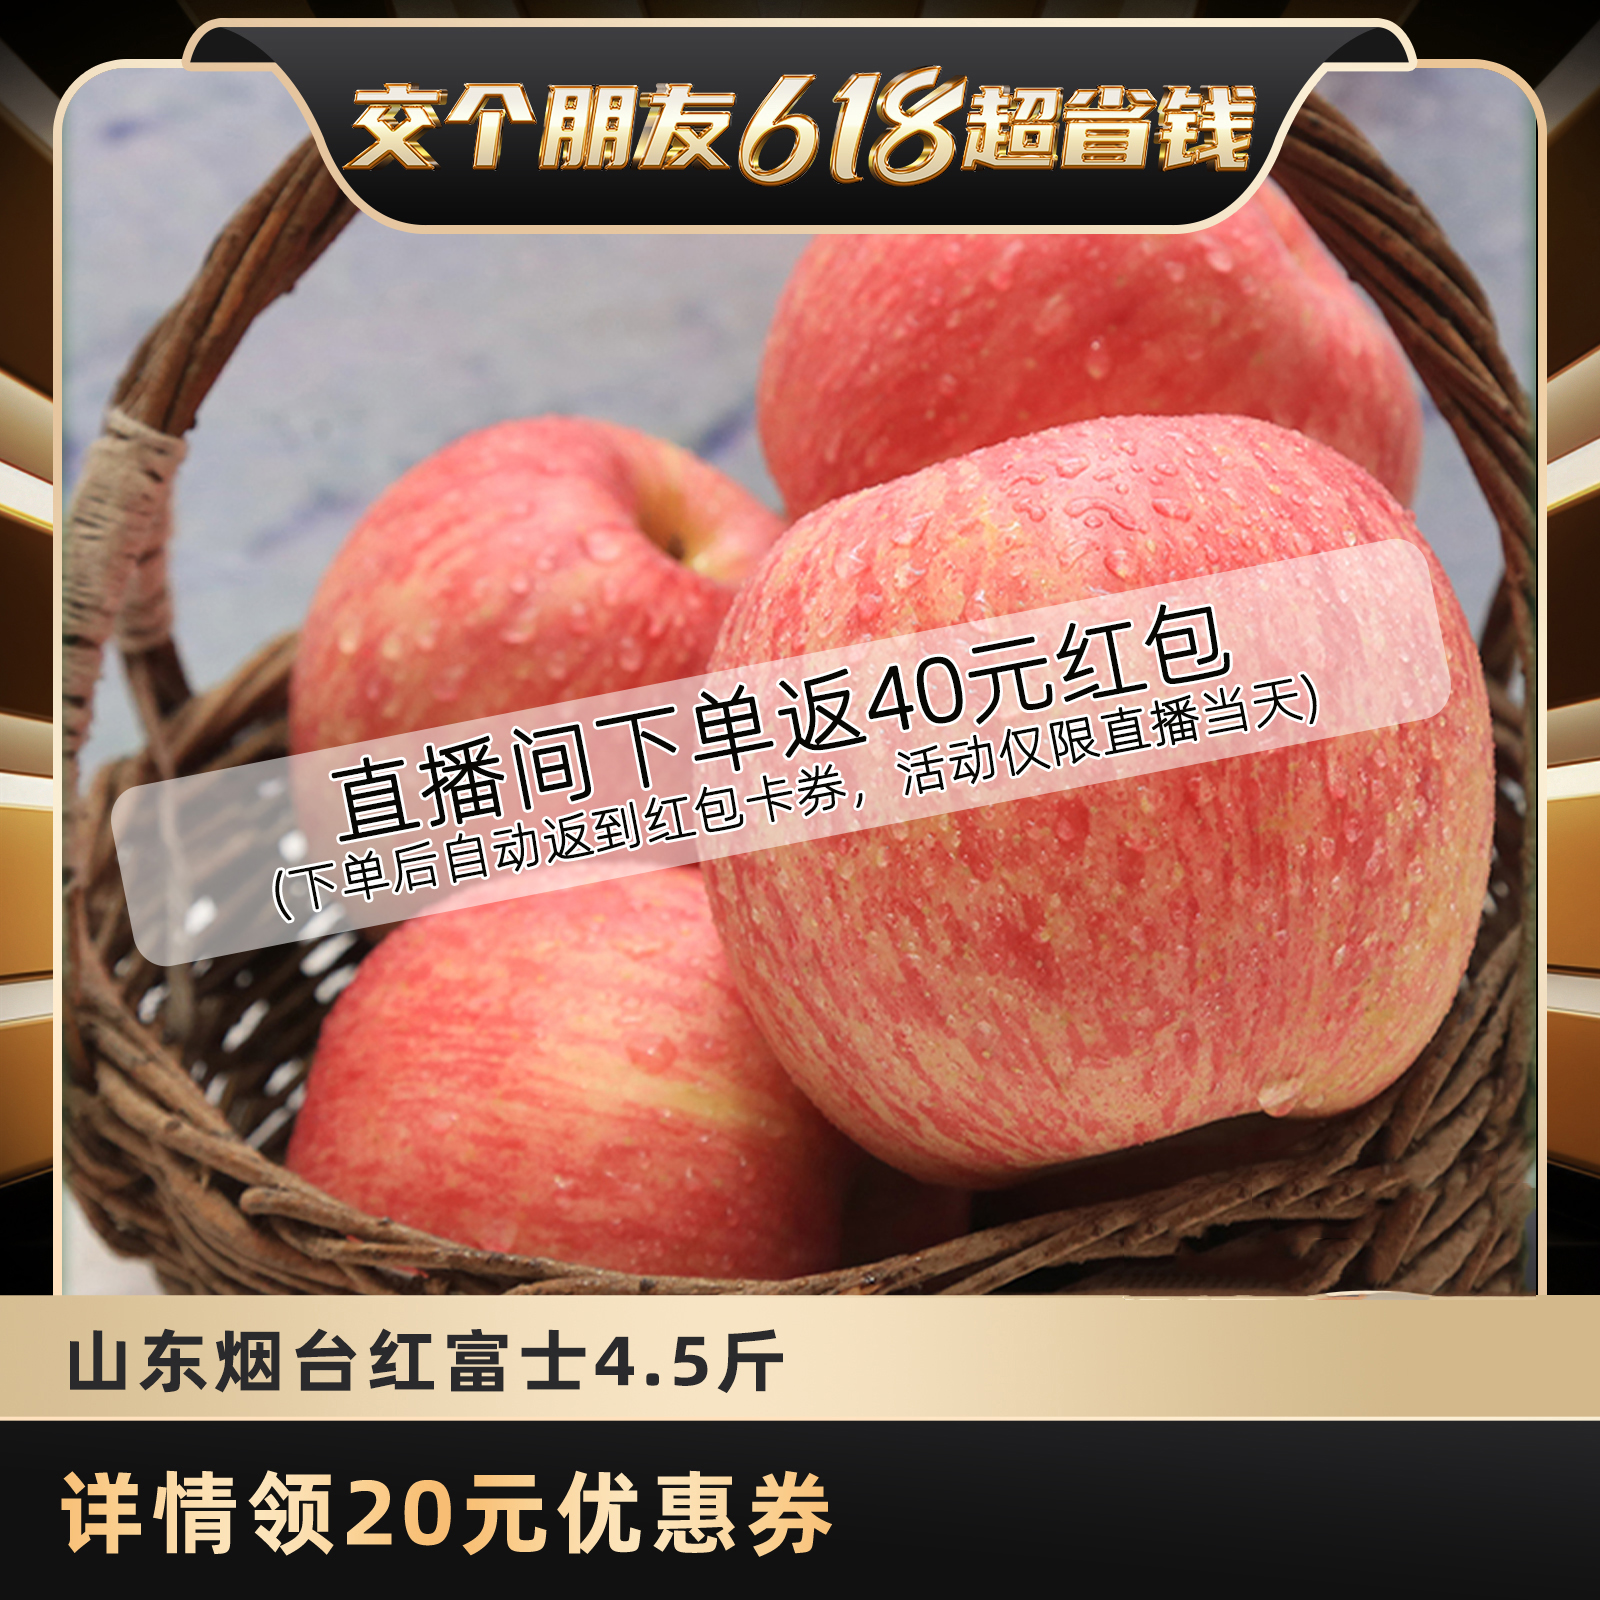 【交个朋友618超省钱】山东烟台苹果栖霞红富士新鲜水果4.5斤整箱